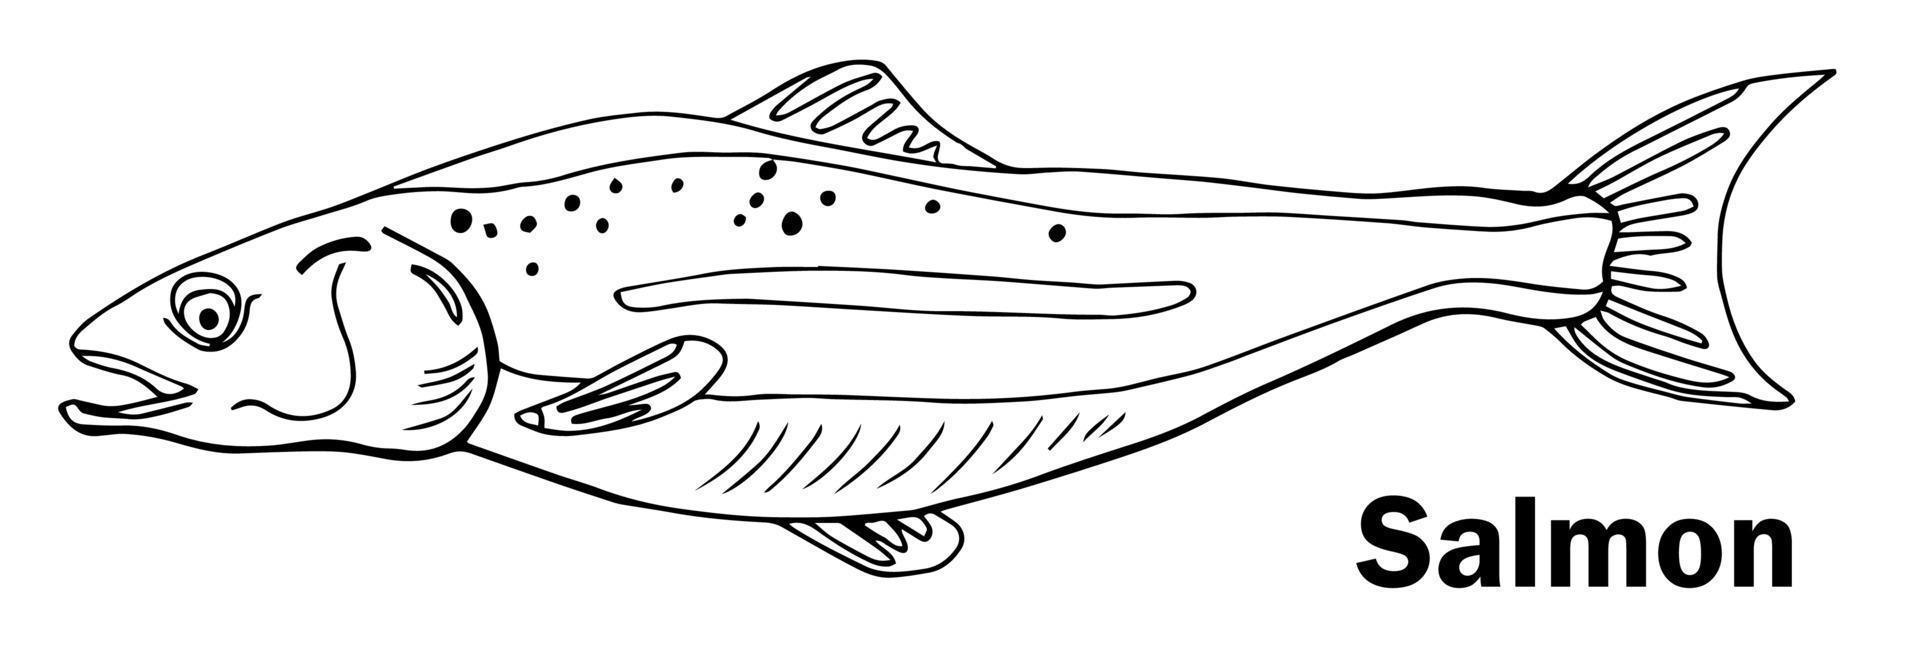 un croquis de vecteur dessiné à la main doodle illustration d'un poisson saumon.